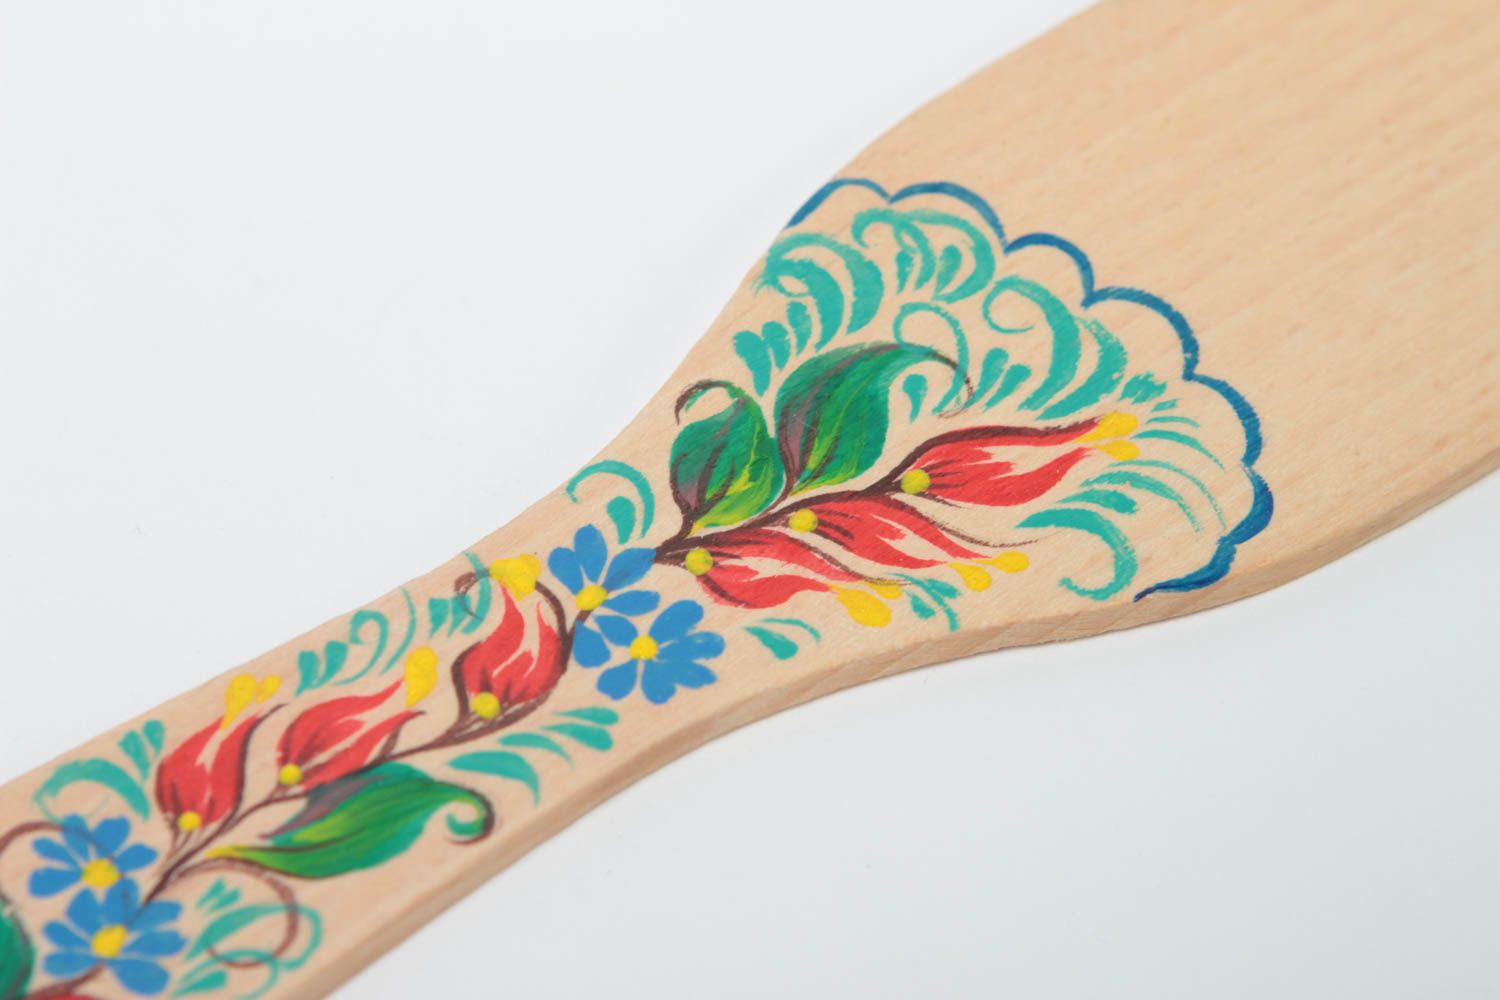 Bright handmade wooden spatula decorative kitchen utensils kitchen designs photo 3